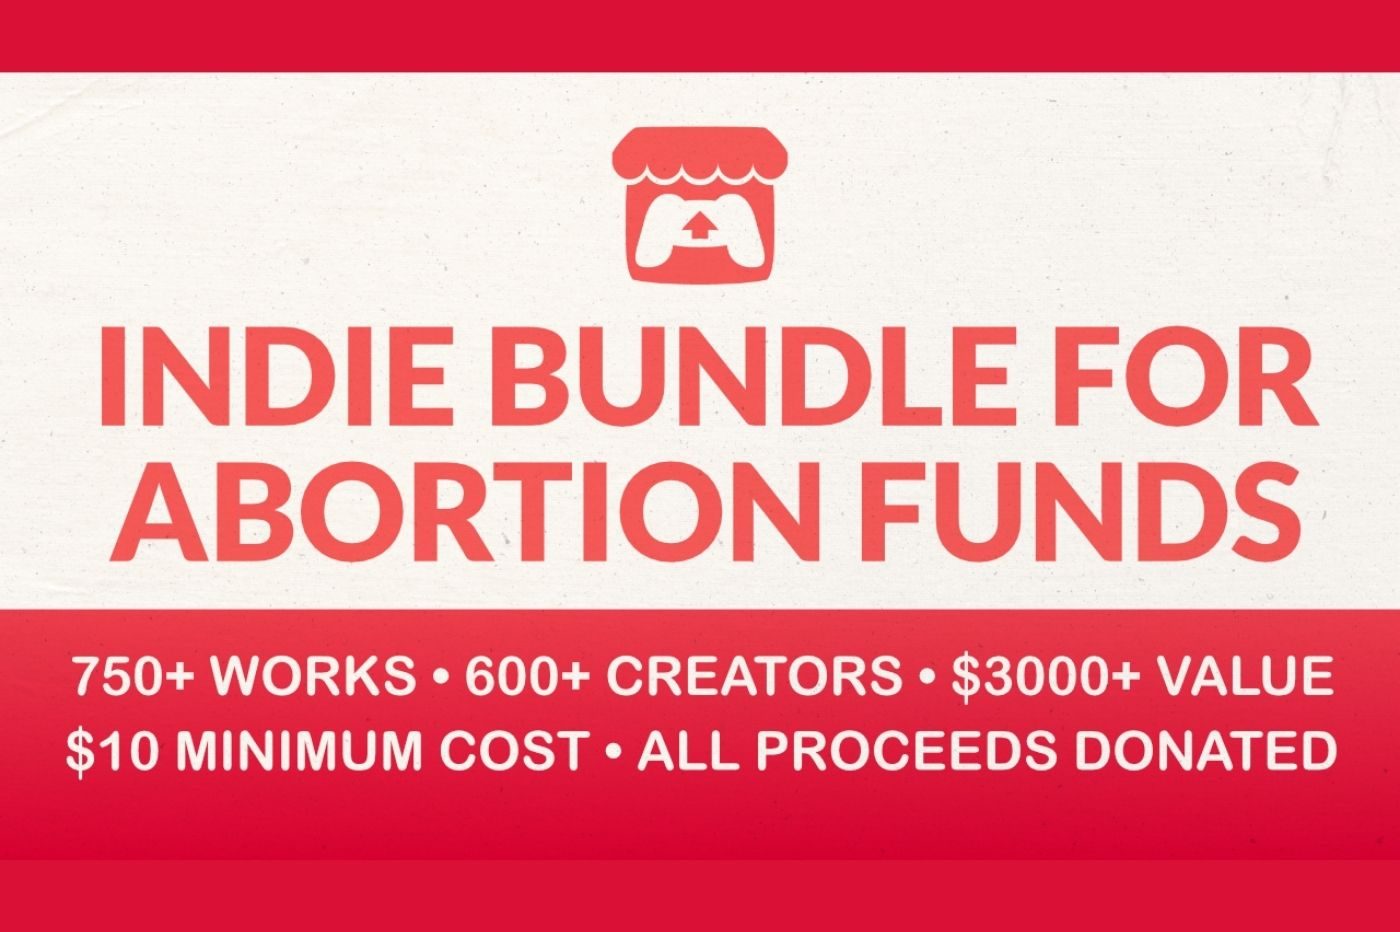 Image promotionnelle du bundle itch.io pour le droit à l'avortement